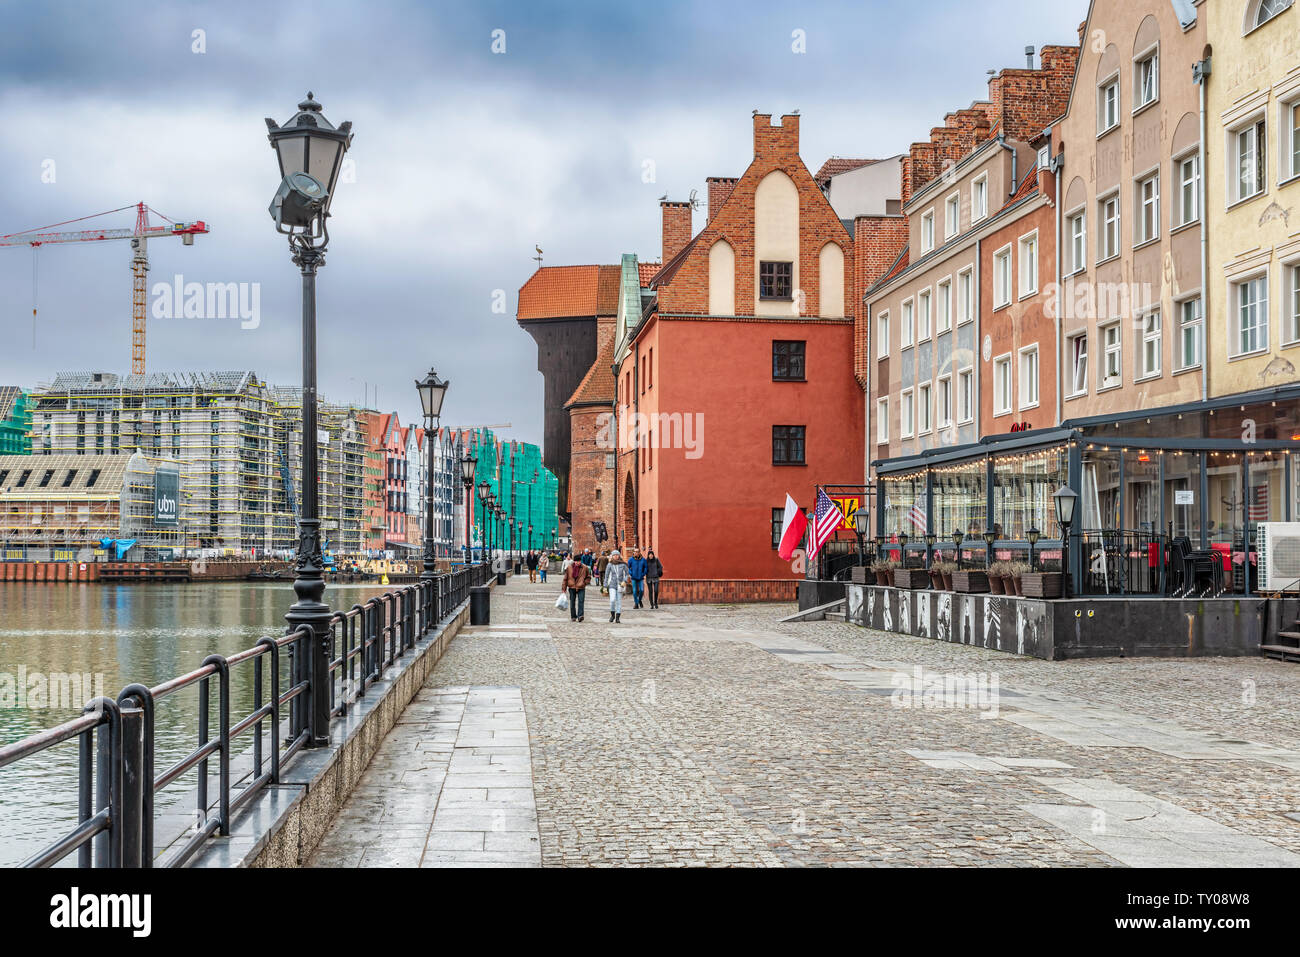 Gdansk, Pologne - Dec 14, 2019 : la vue classique de Gdansk avec la grue de Gdansk et l'historique des bâtiments de style hanséatique le long de la rivière Motlawa, Pologne Banque D'Images